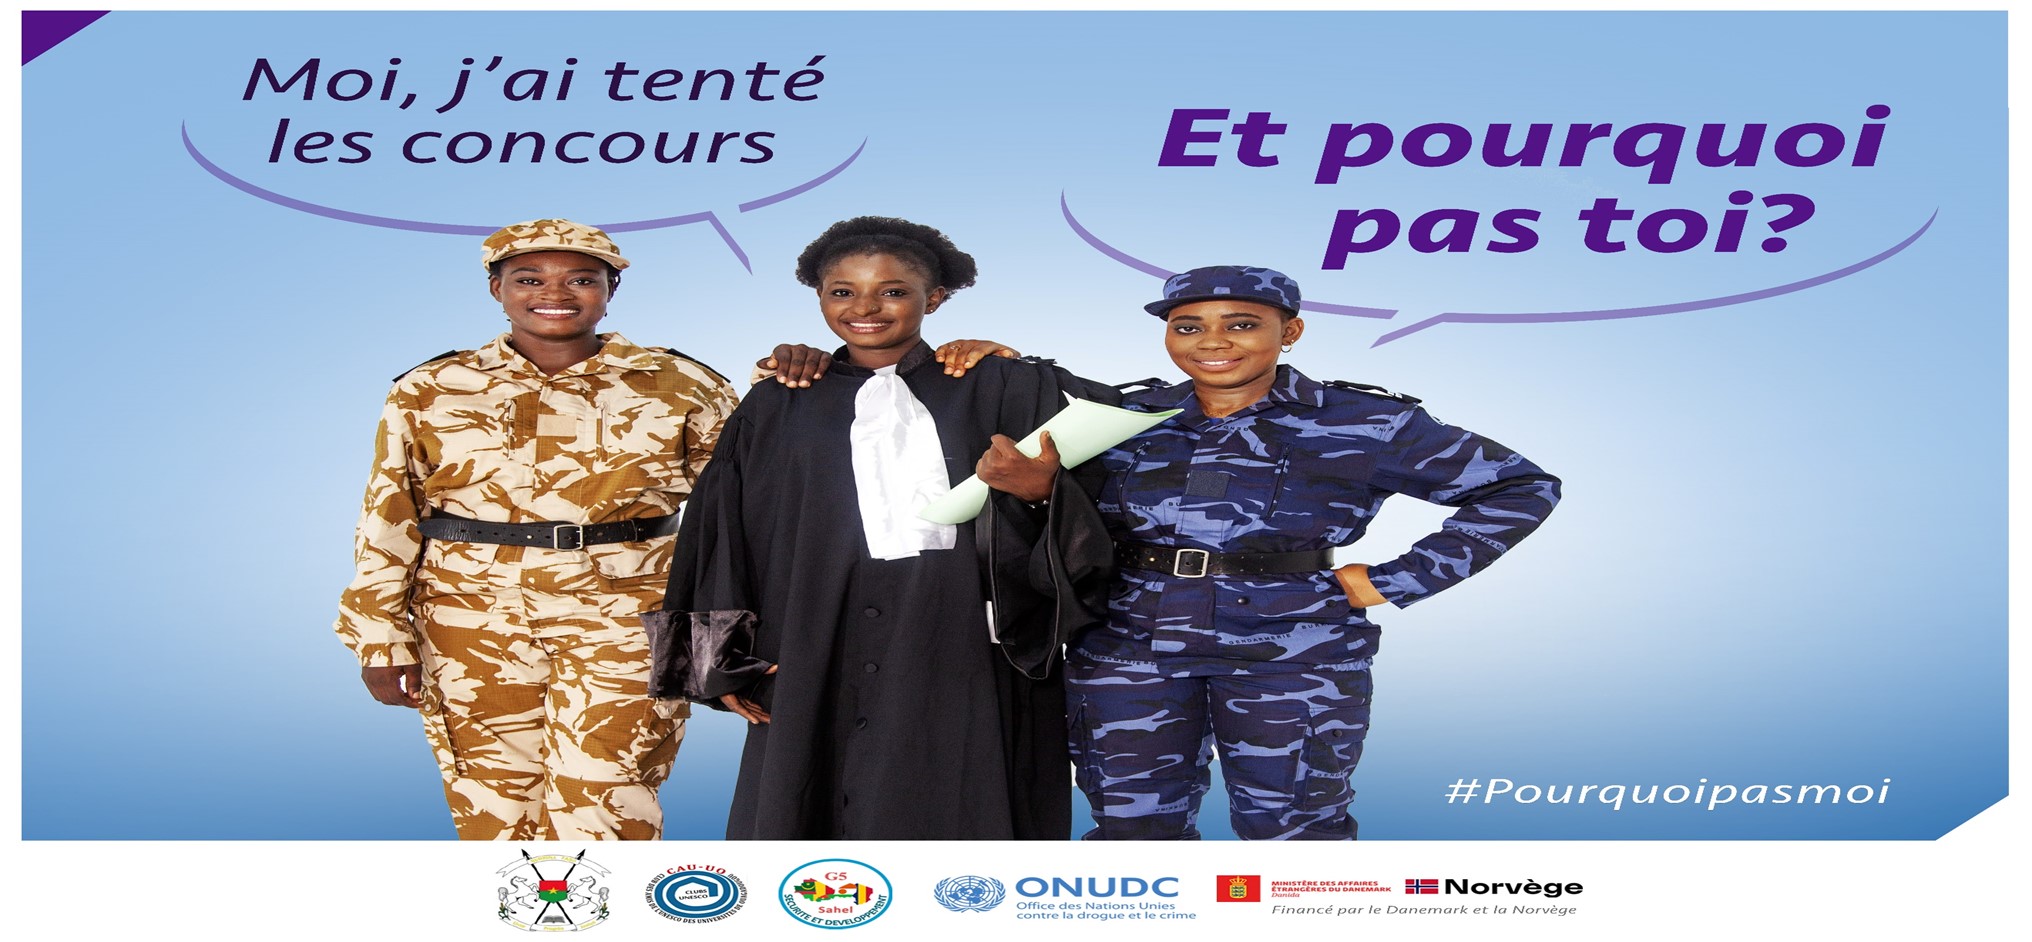 <div style="text-align: center;"><em>Ouagadougou, Burkina Faso billboard for the #WhyNotMe campaign</em></div>